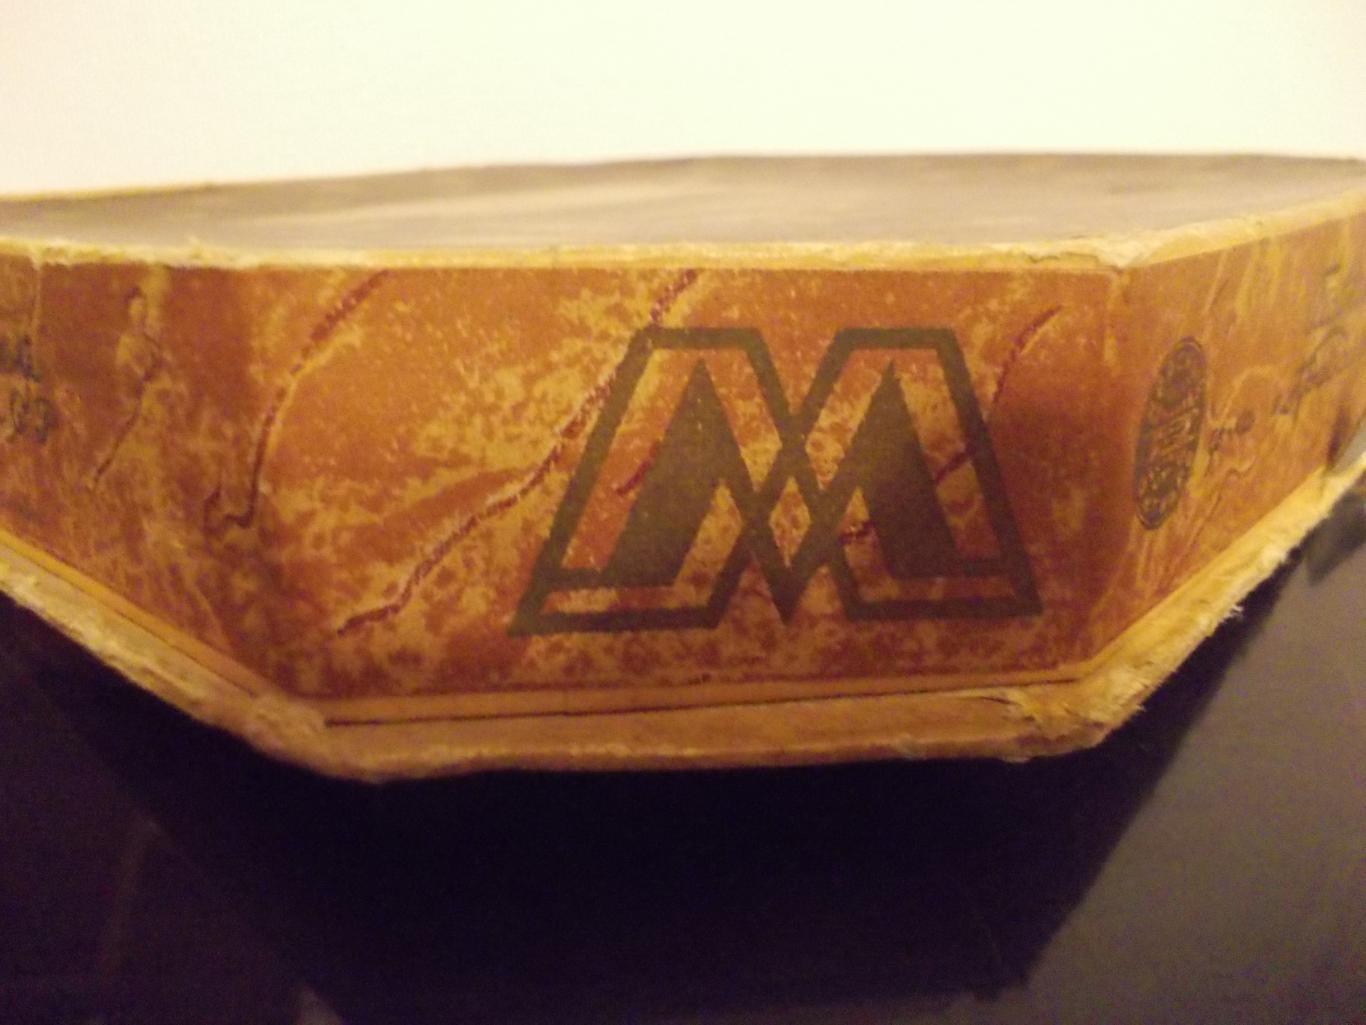 Коробка от шоколадных конфет Ассорти,ф-ка Красный октябрь, Москва. !951 год. 3